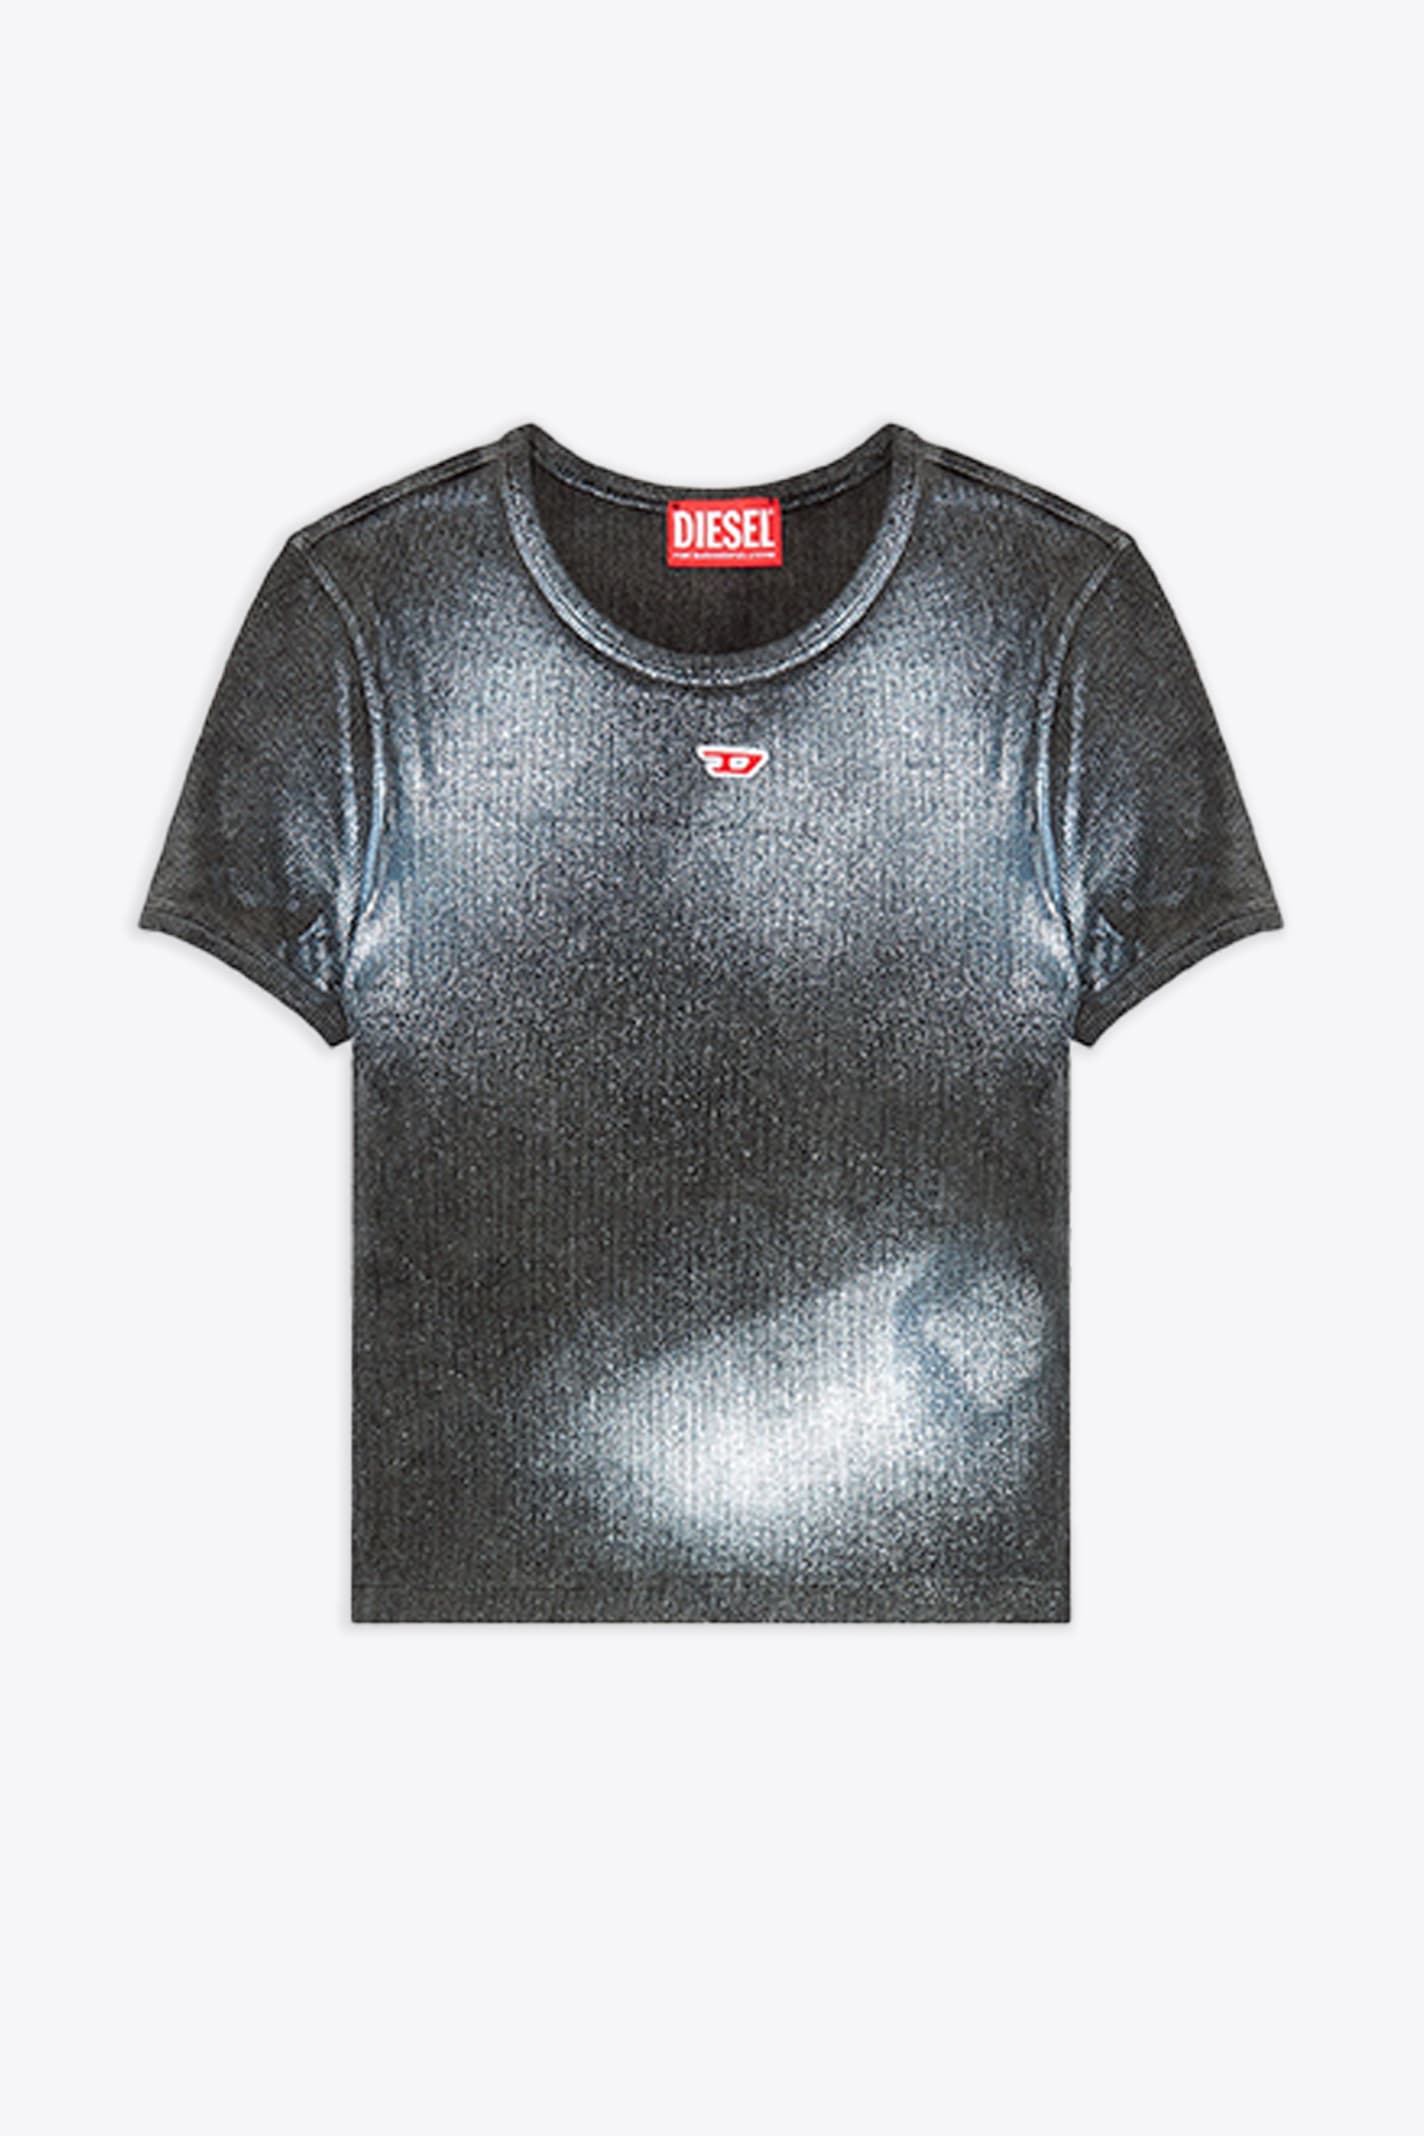 Diesel T-ele-n1 Black Ribbed Cotton T-shirt With Metallic Coating - T Ele N1 In Nero